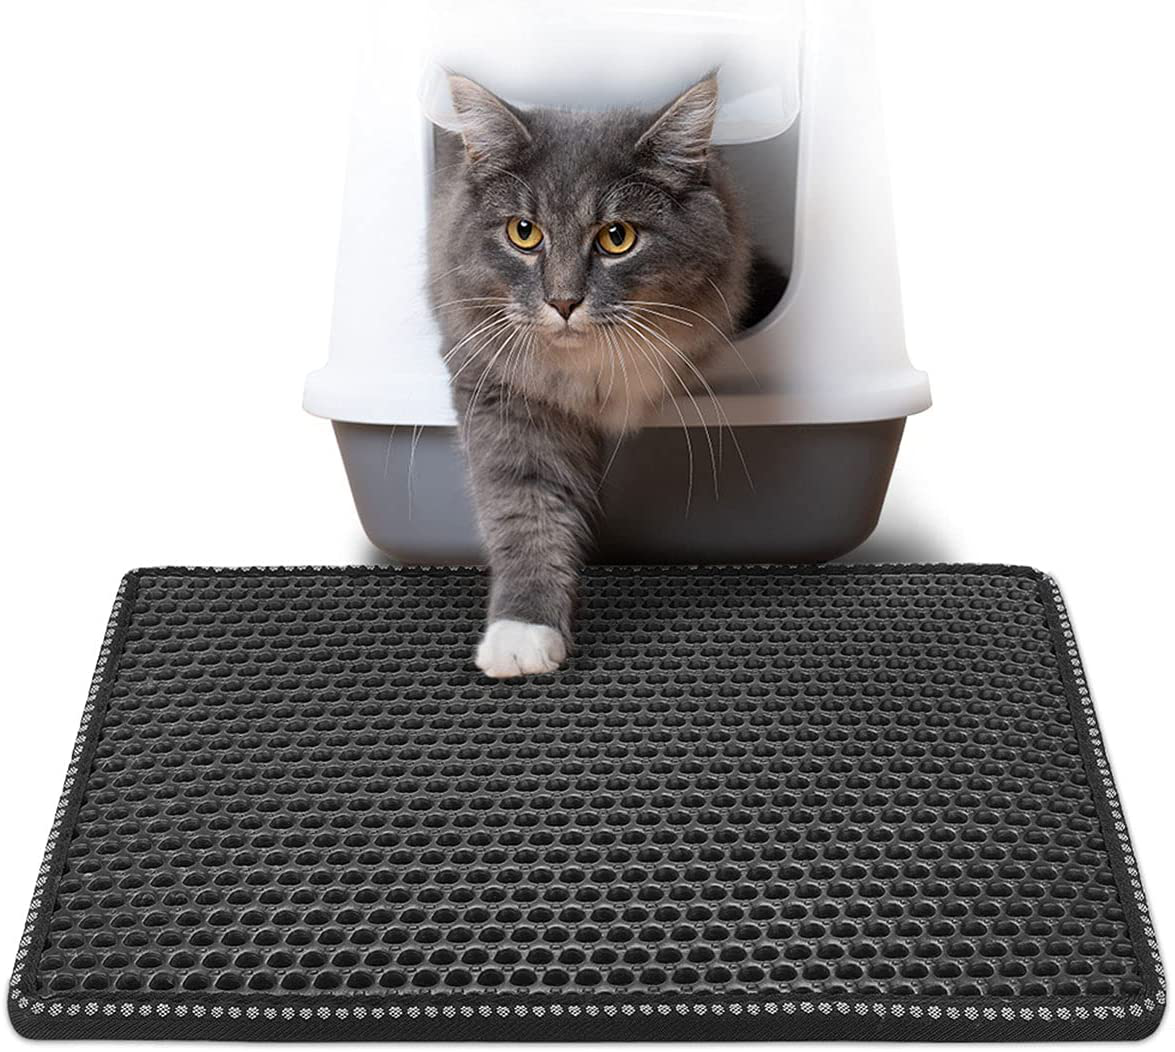 Cat Litter Mat,Litter Box Mat,Honeycomb Double Layer Litter Trapping  Mat,Waterproof Urine Proof Kitty Litter Mat,Easy Clean Scatter Control